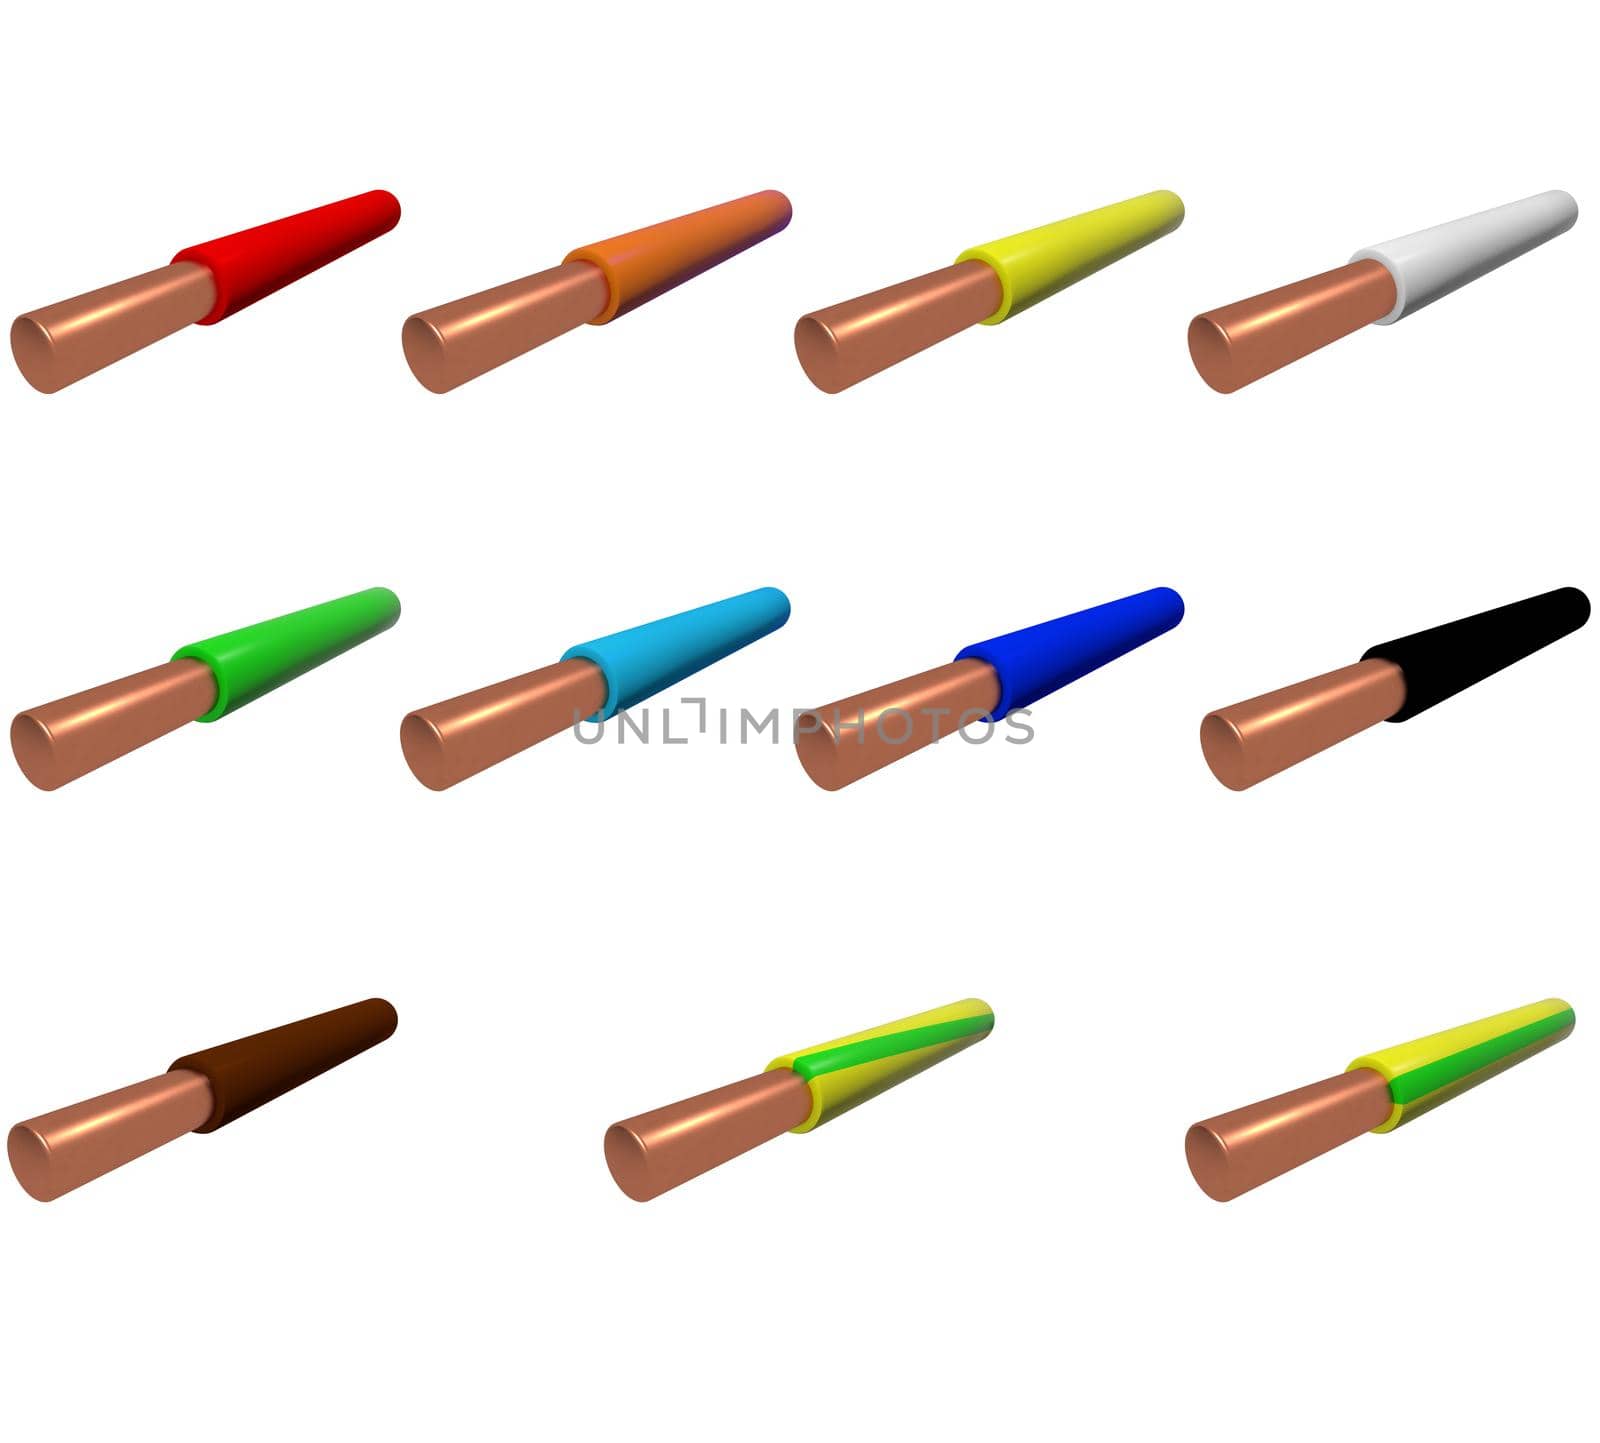 sample single-core wire in colored plastic insulation.